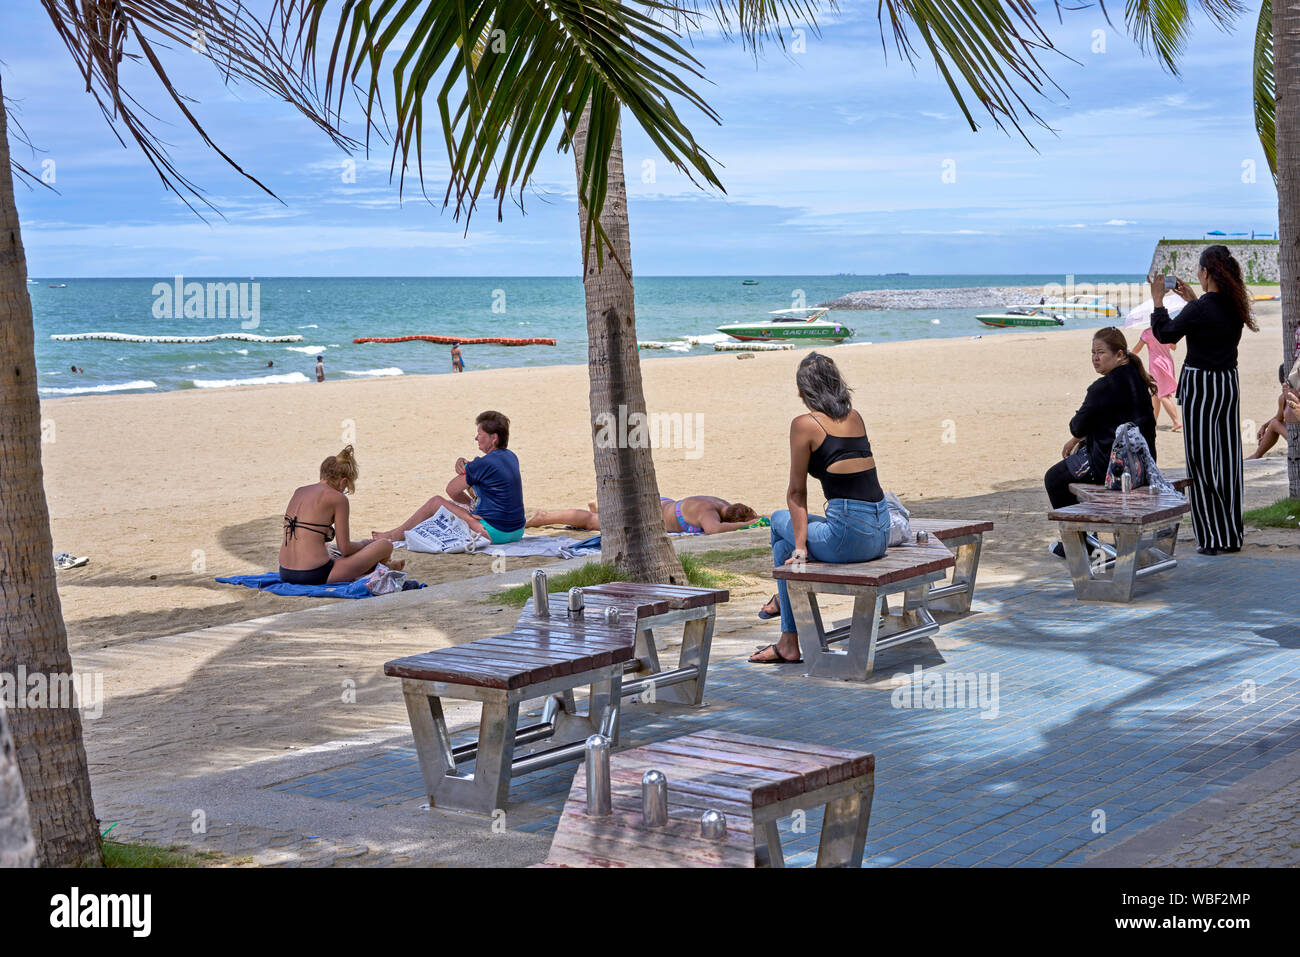 Spiaggia di Pattaya Thailandia del sud-est asiatico con le donne solo prendendo il sole, rilassante e scattare fotografie. Foto Stock